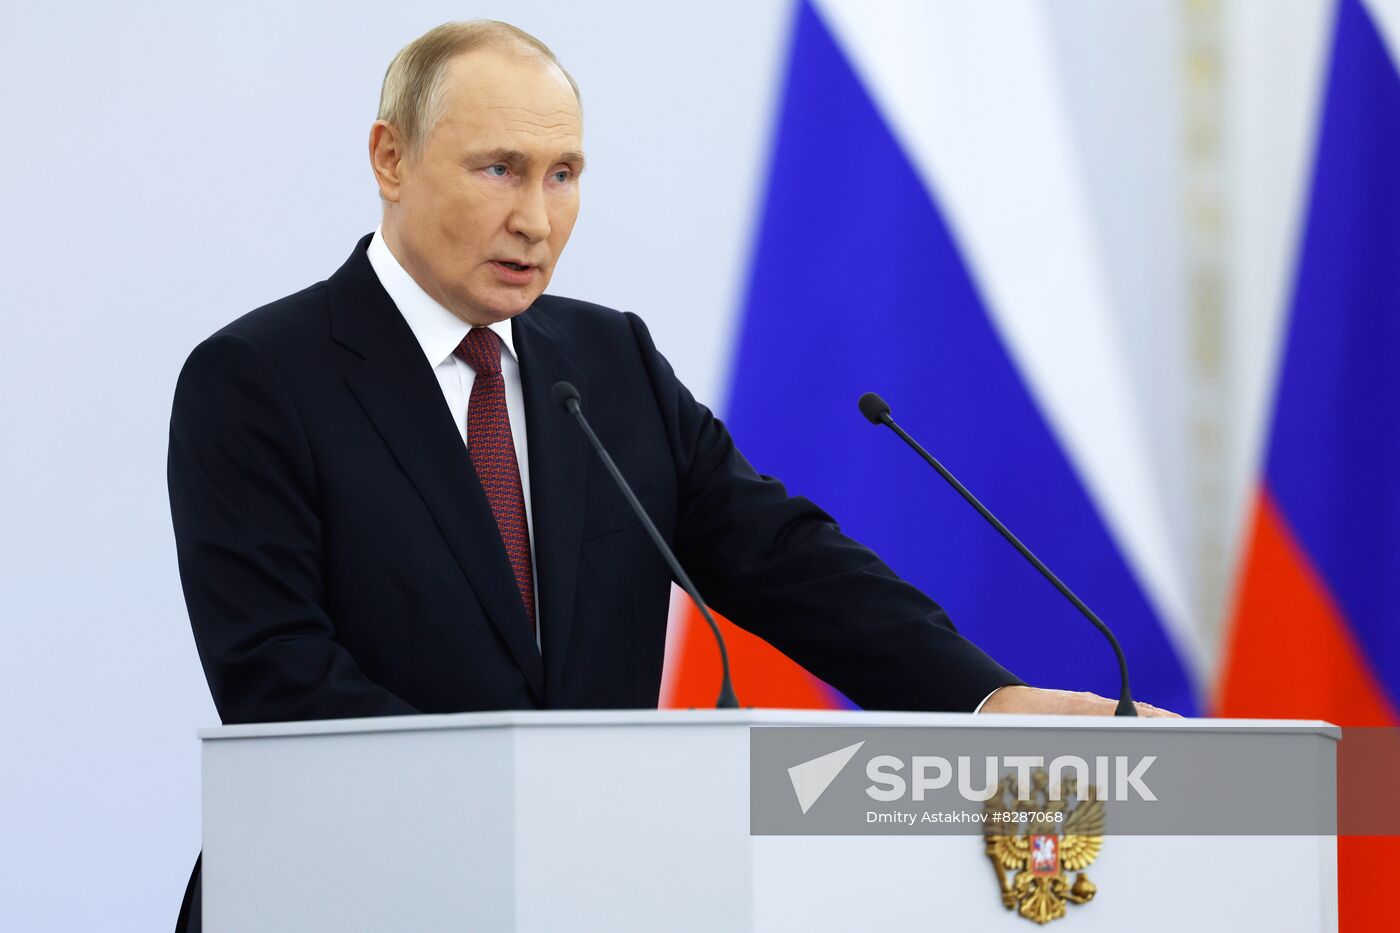 Russia Putin New Territories Accession